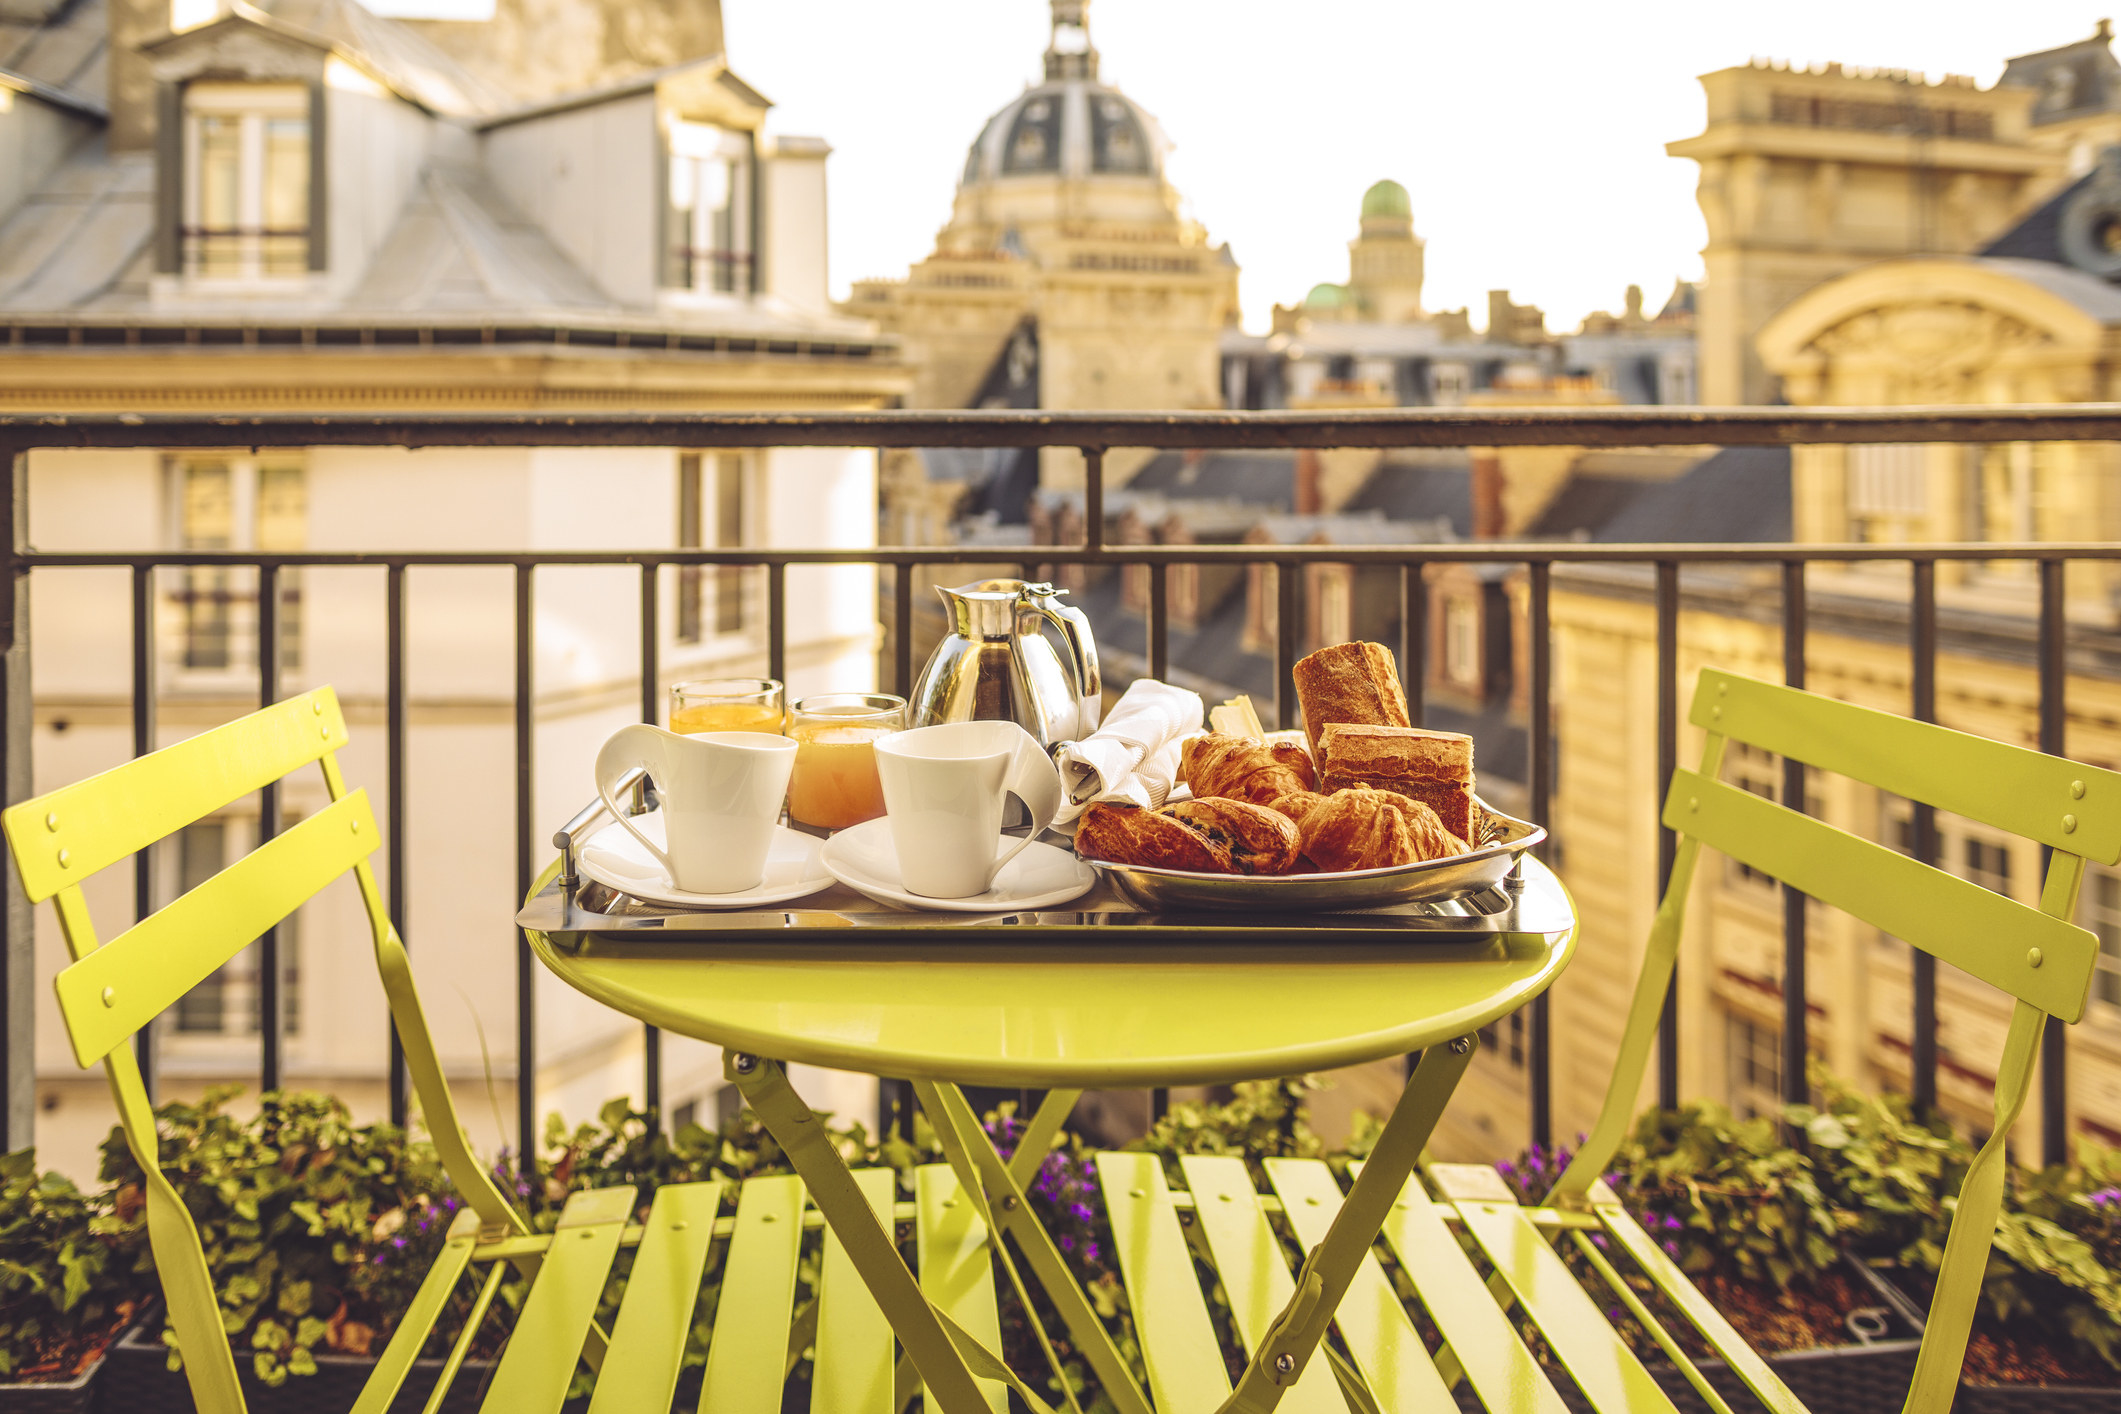 A hotel breakfast on a balcony in Paris.